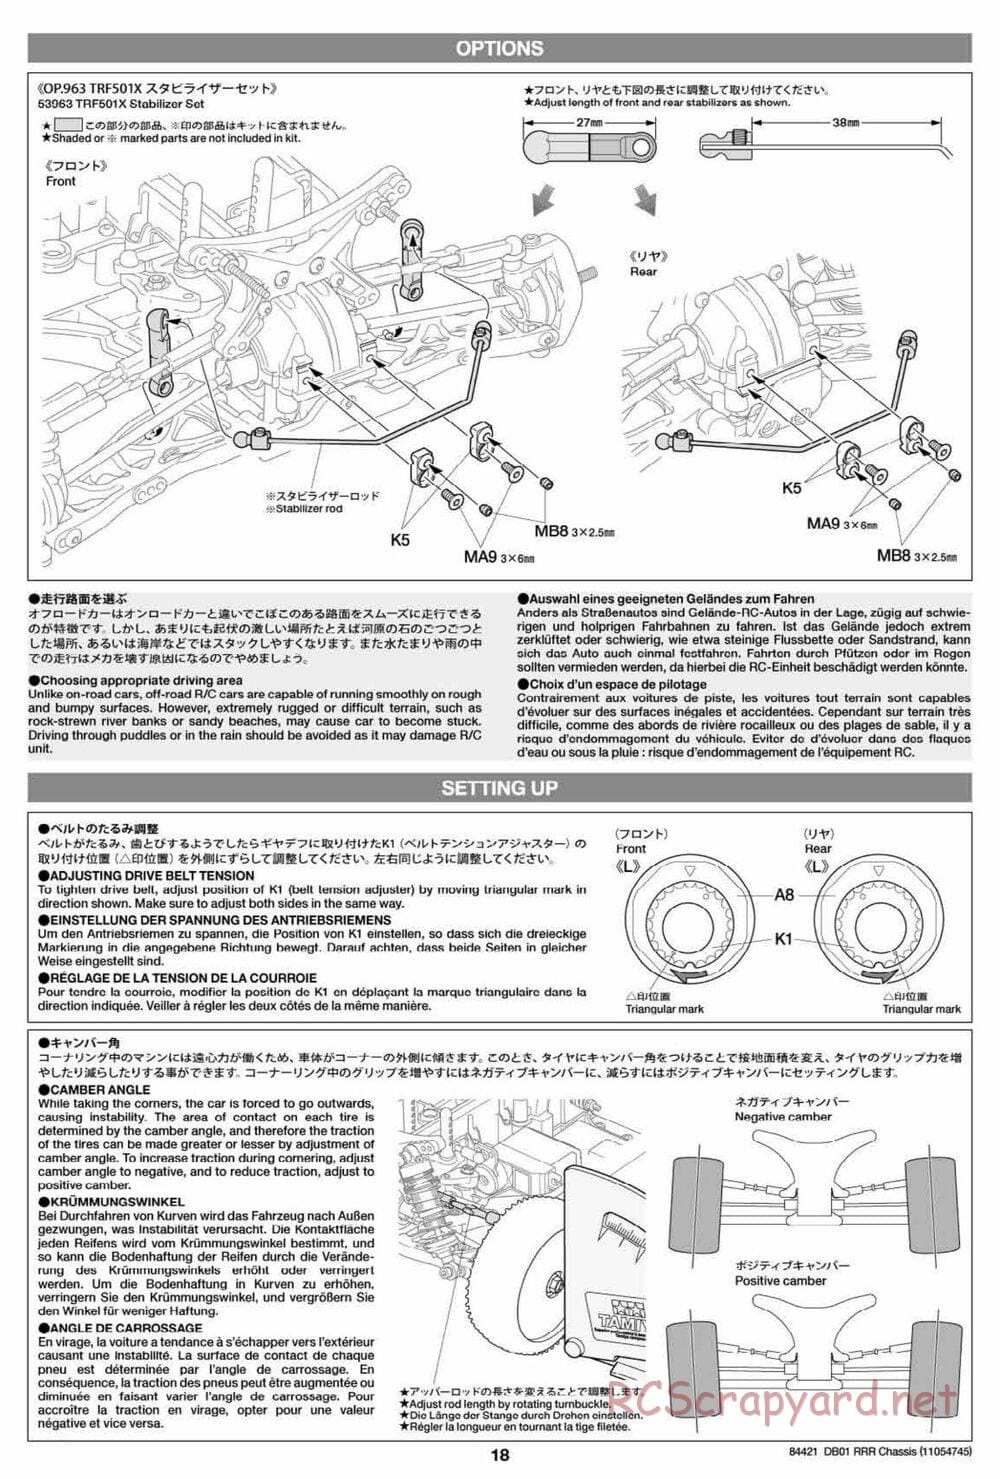 Tamiya - DB-01 RRR Chassis - Manual - Page 18